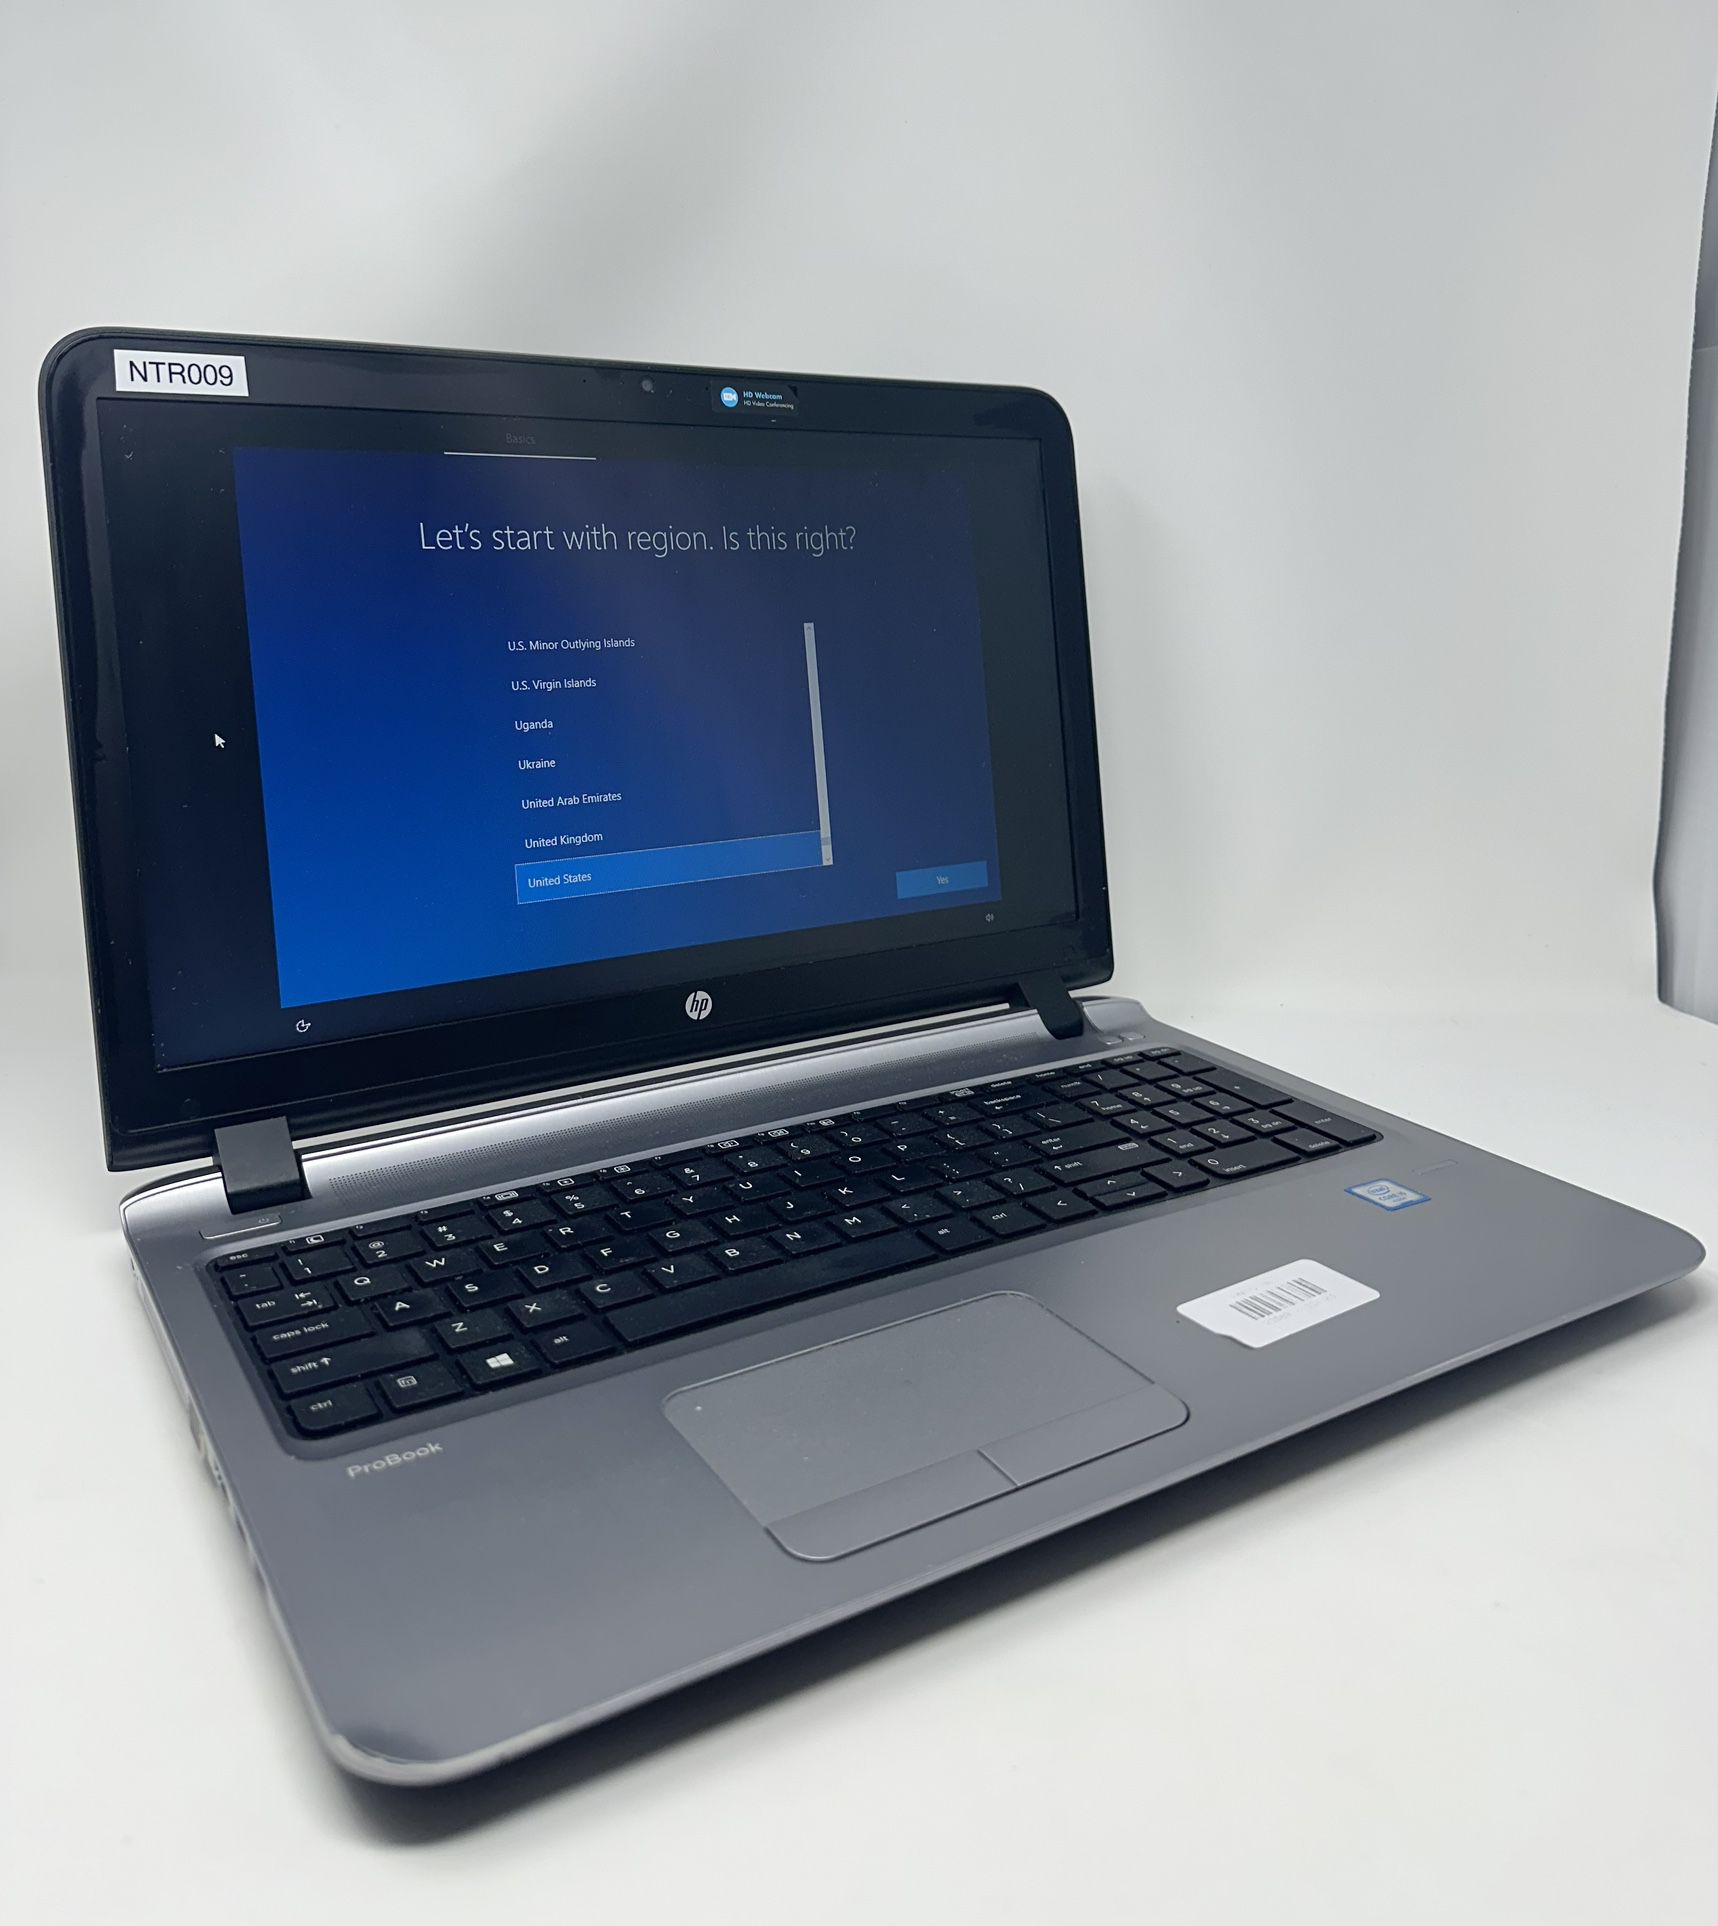 Refurbished HP Laptop